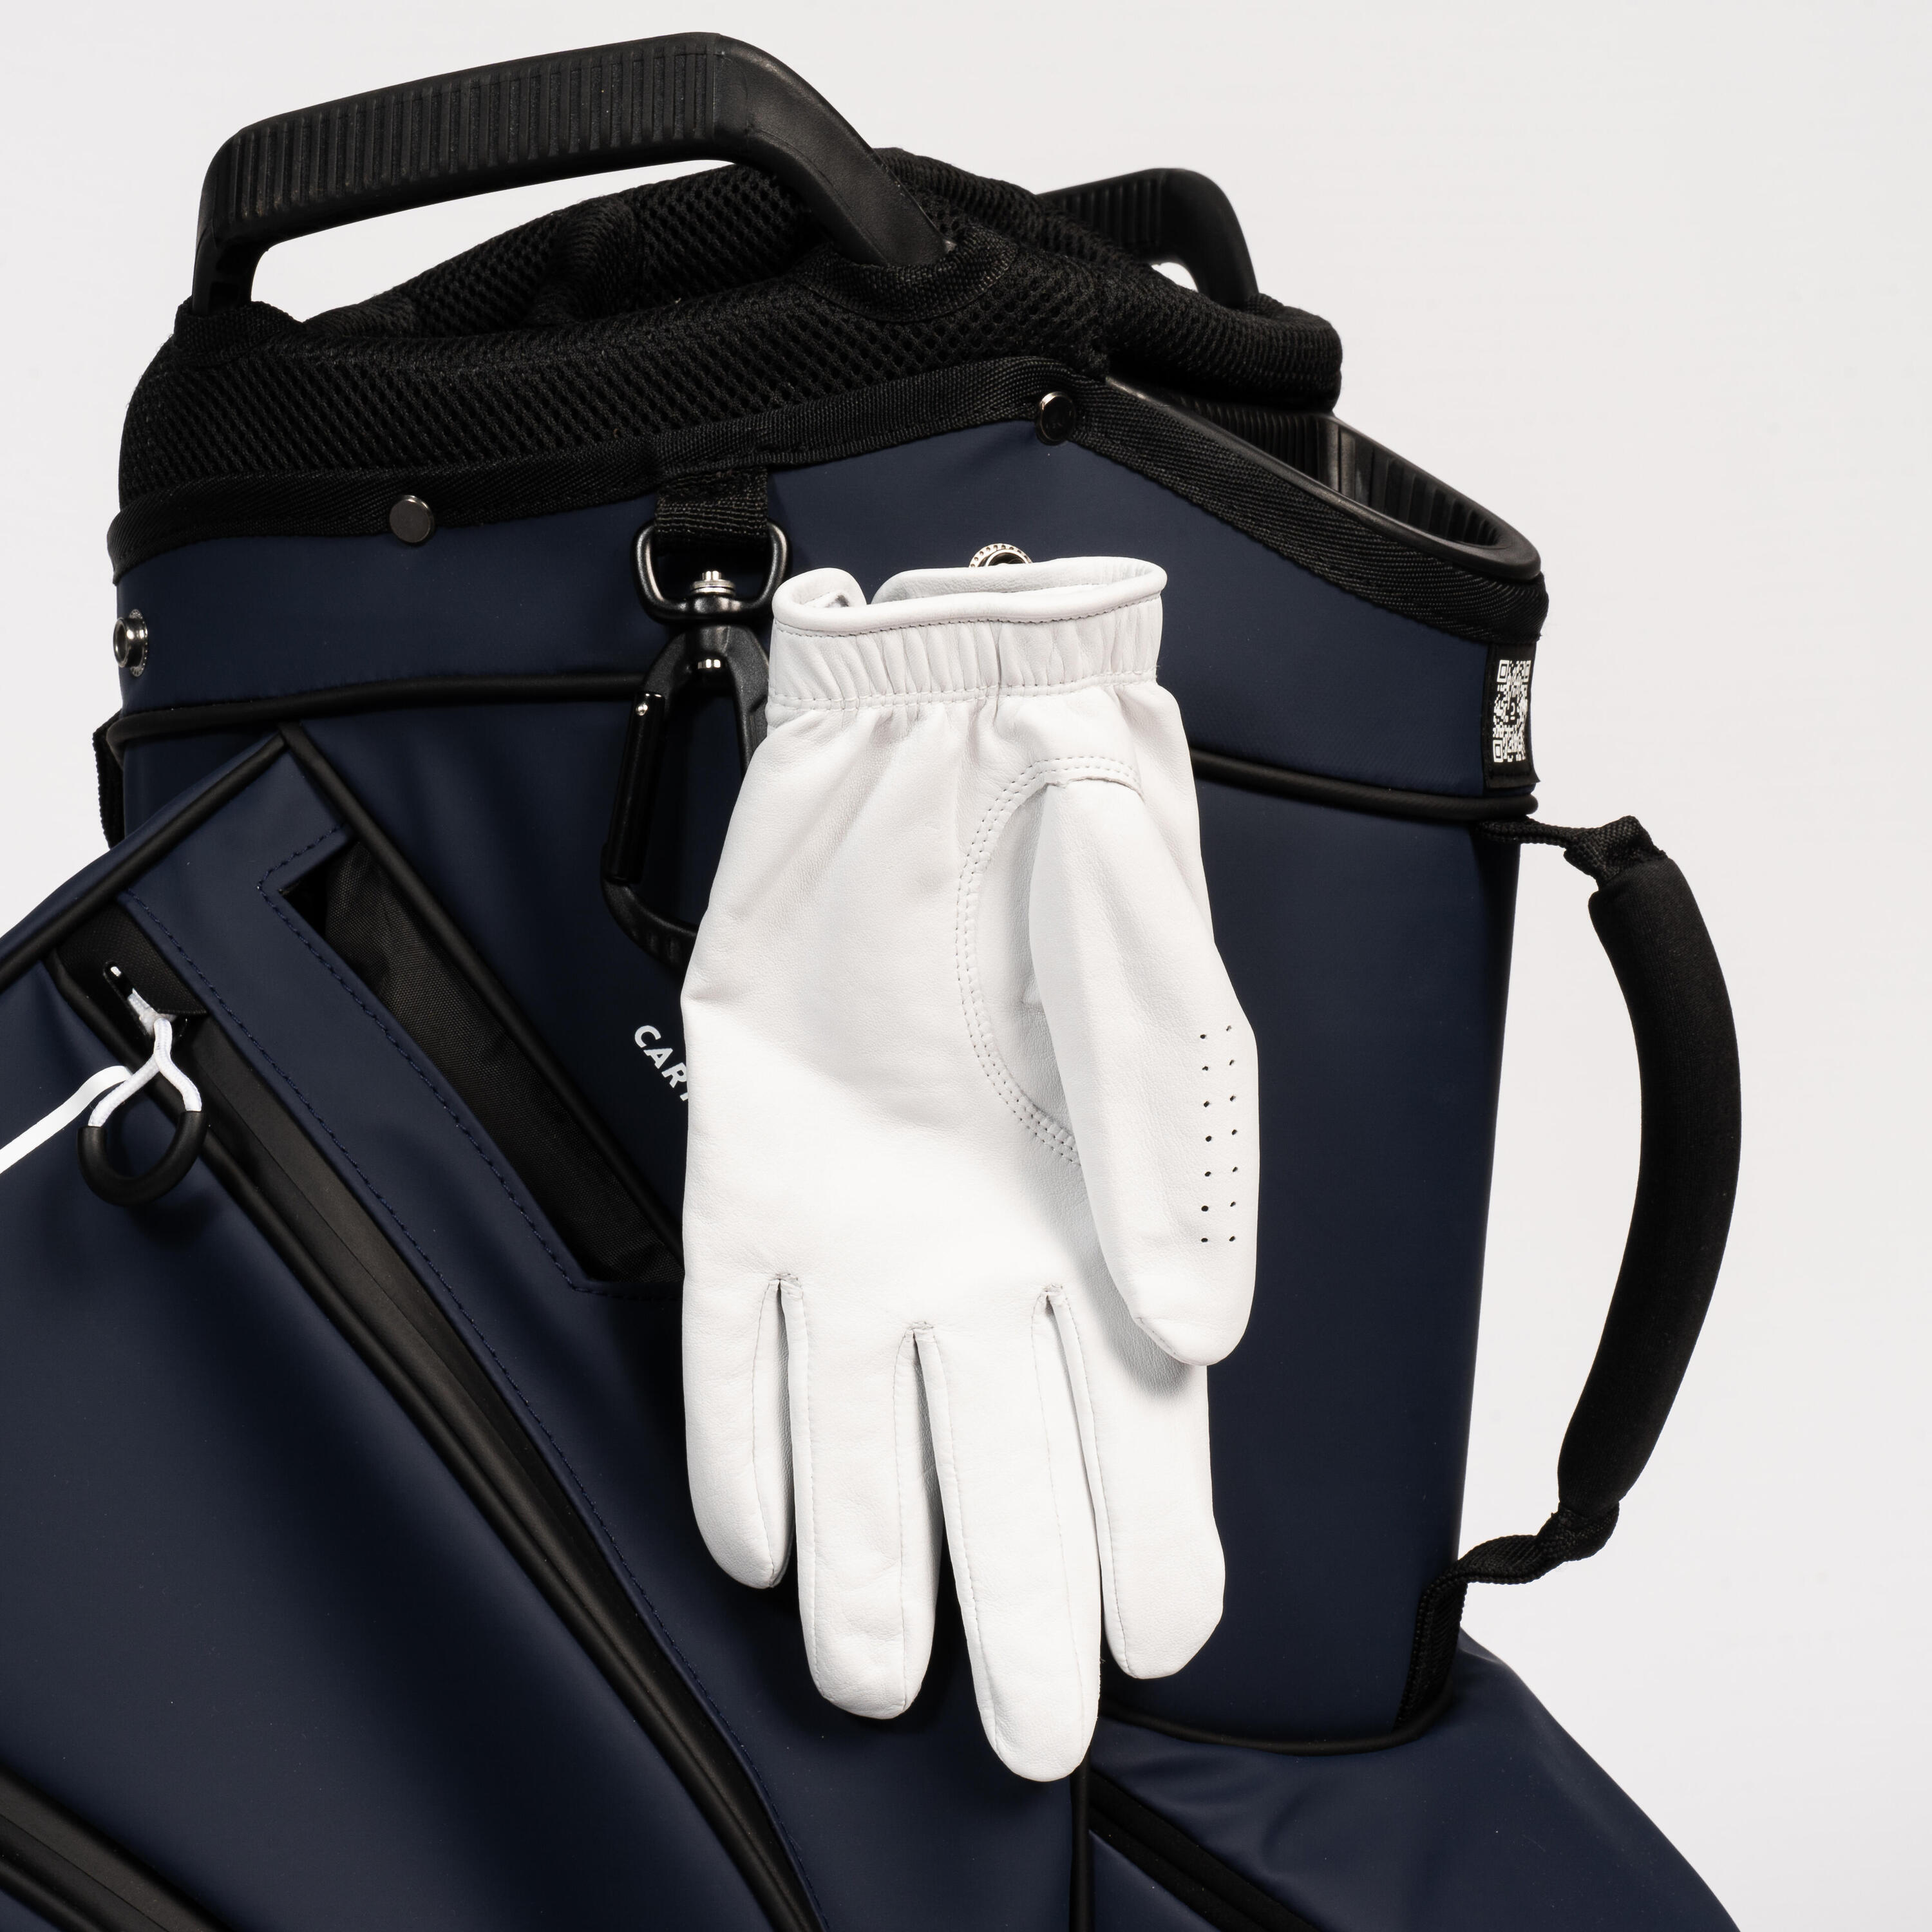 Golf trolley bag waterproof – INESIS Cart blue 8/12